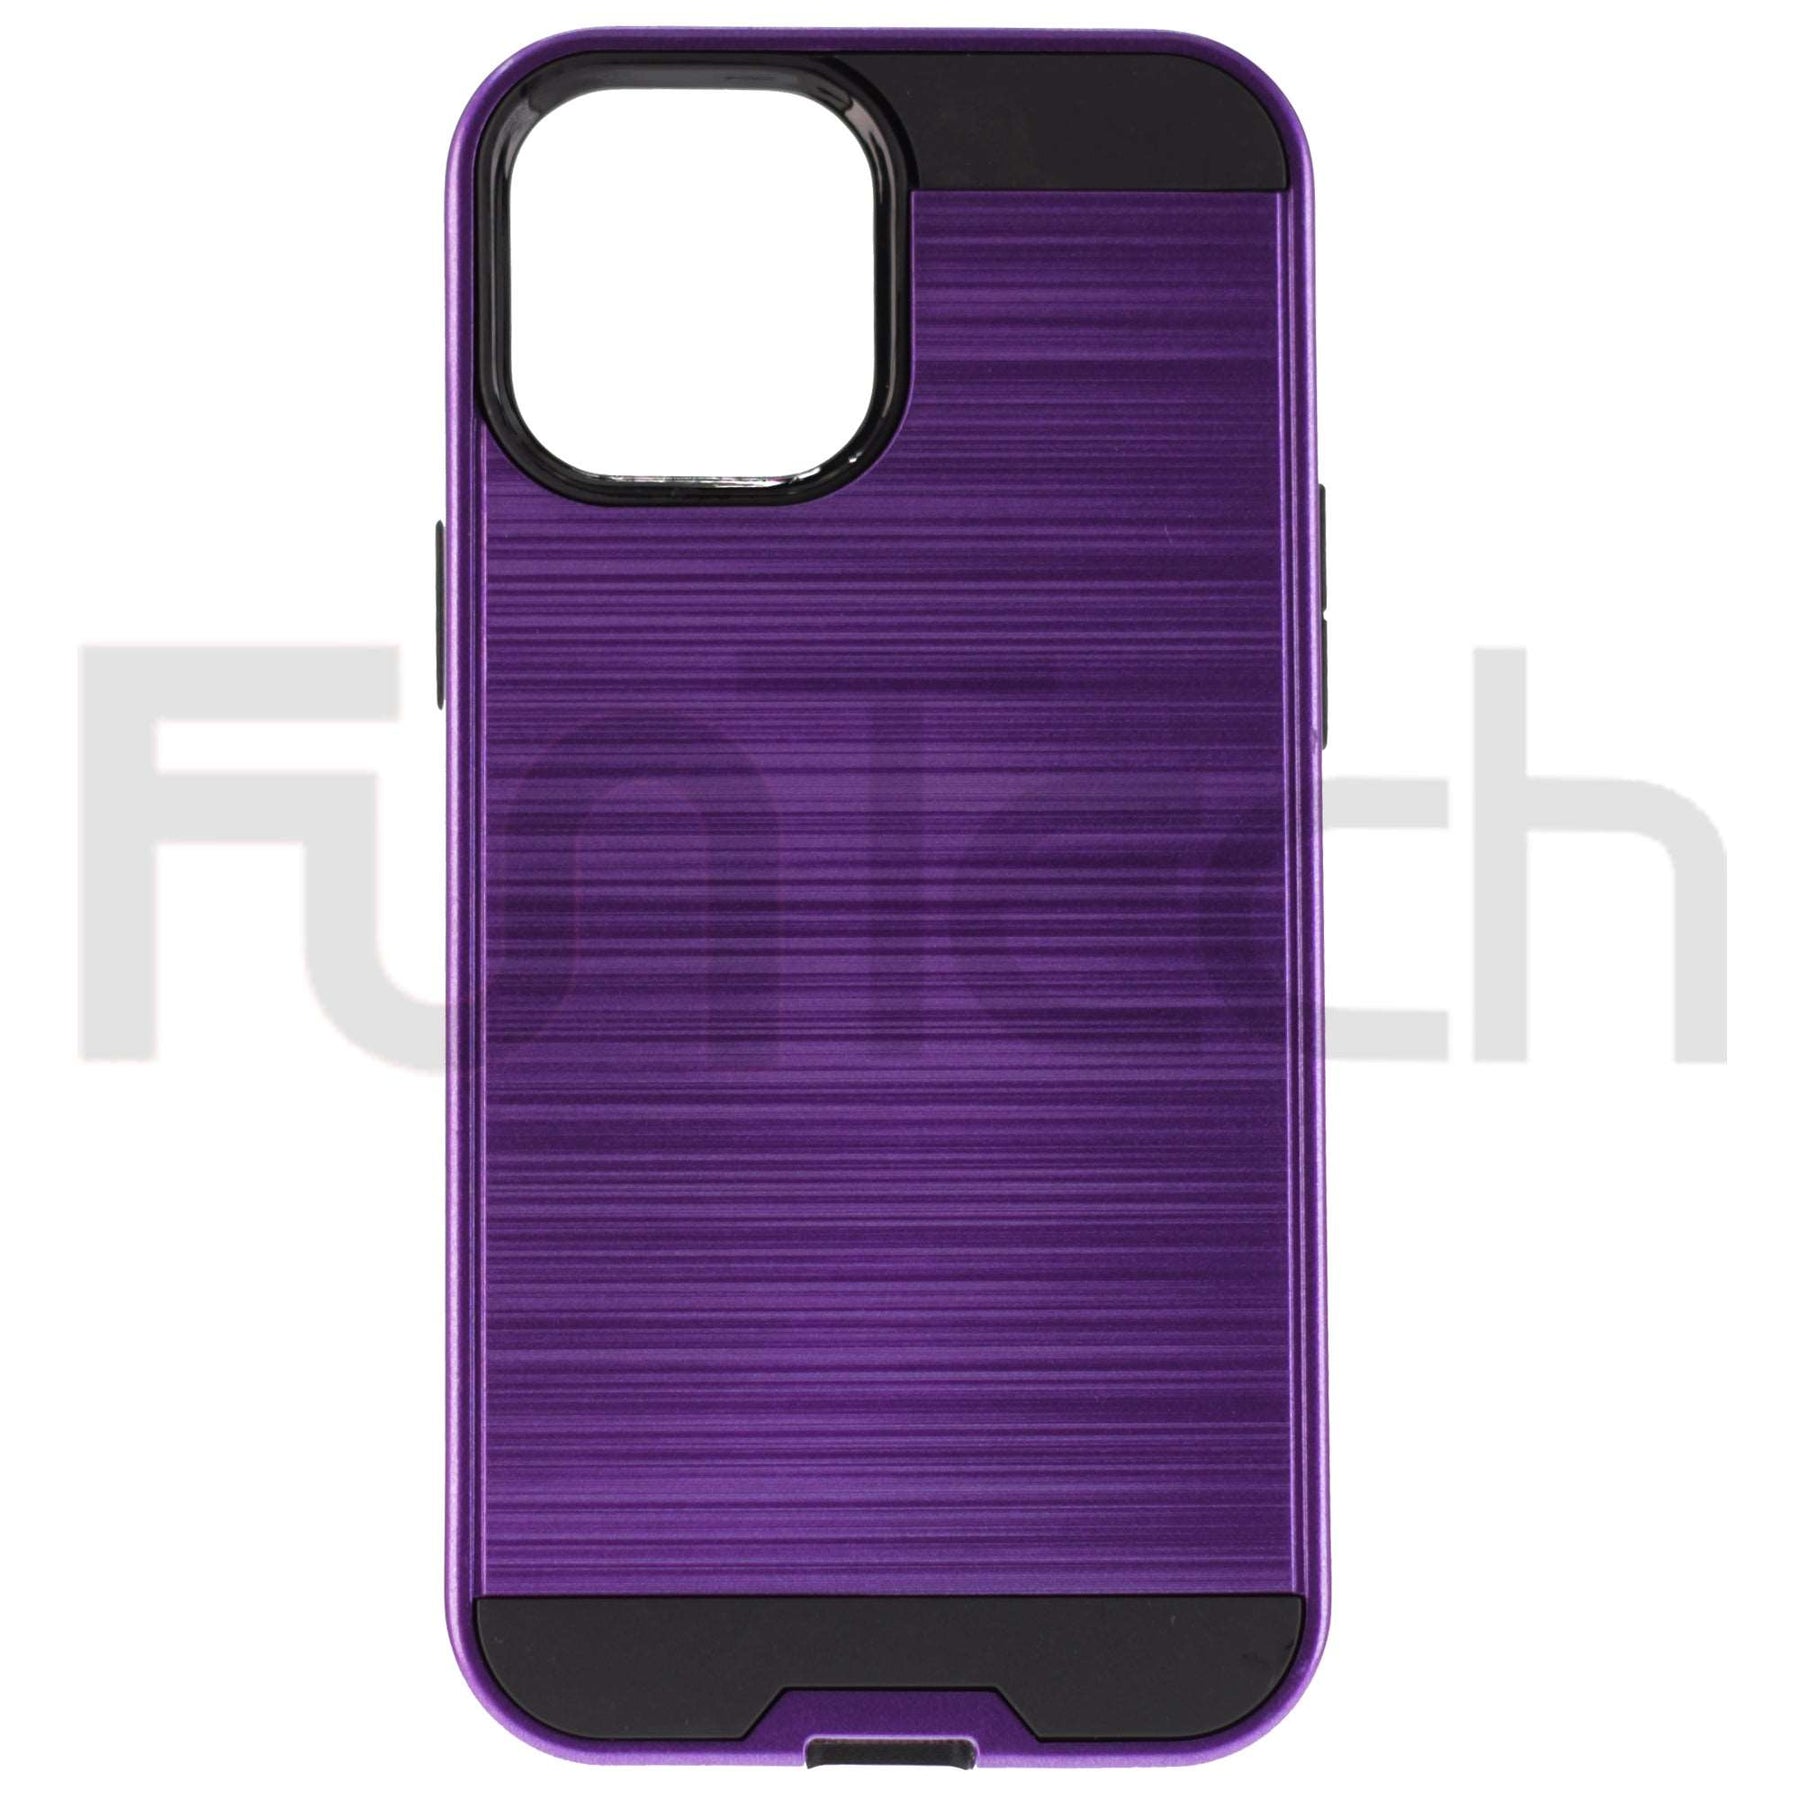 Apple iPhone 12 / 12 Pro, Slim Armor Case, Color Purple.